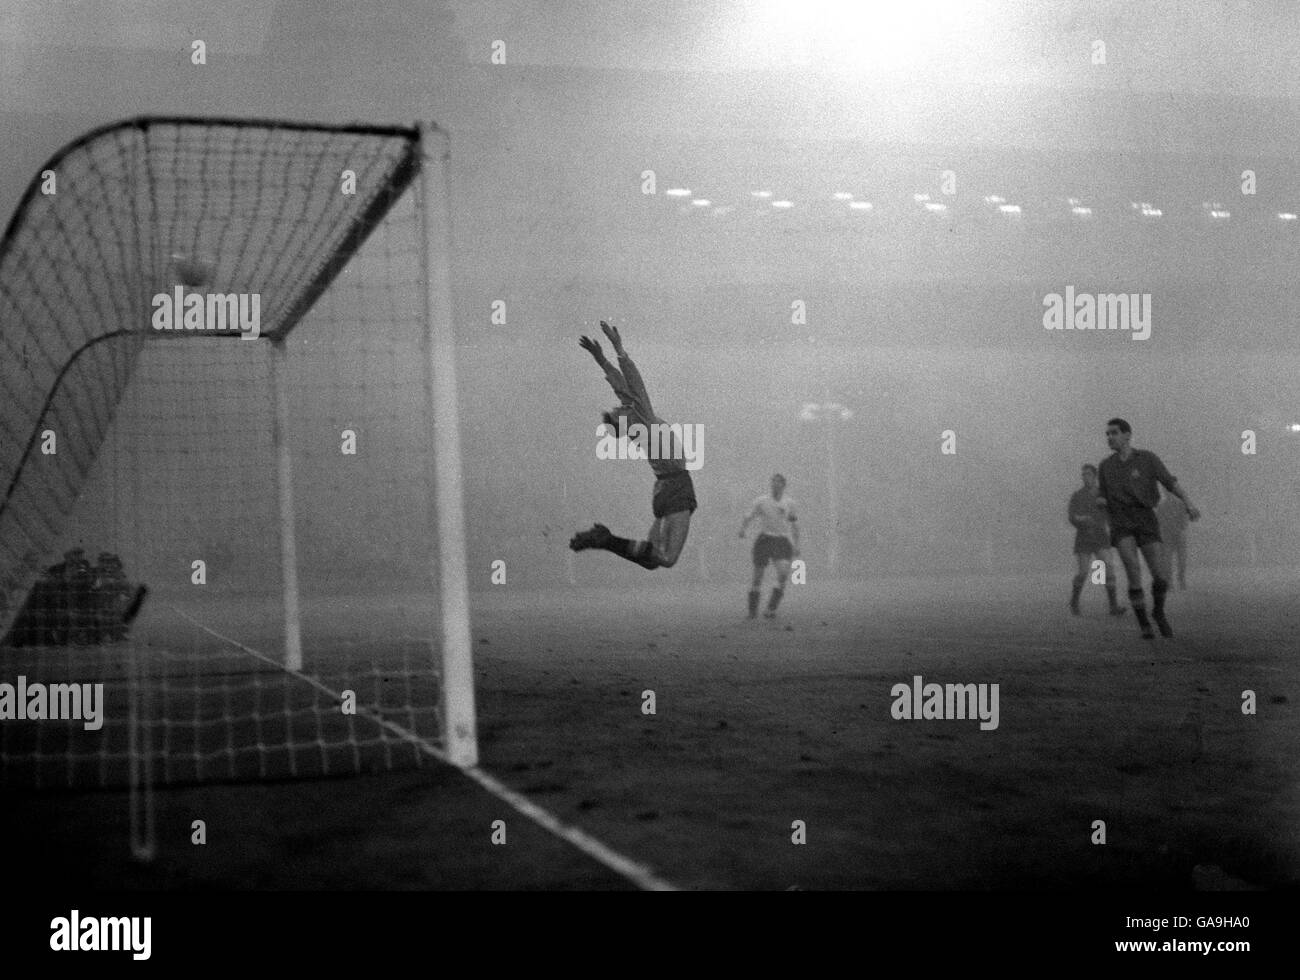 Calcio - amichevole - Stadio di Wembley - Inghilterra / Spagna. Il portiere spagnolo Carmelo Cedrun salta indietro per salvare un colpo di scena nei minuti di chiusura della partita. Foto Stock